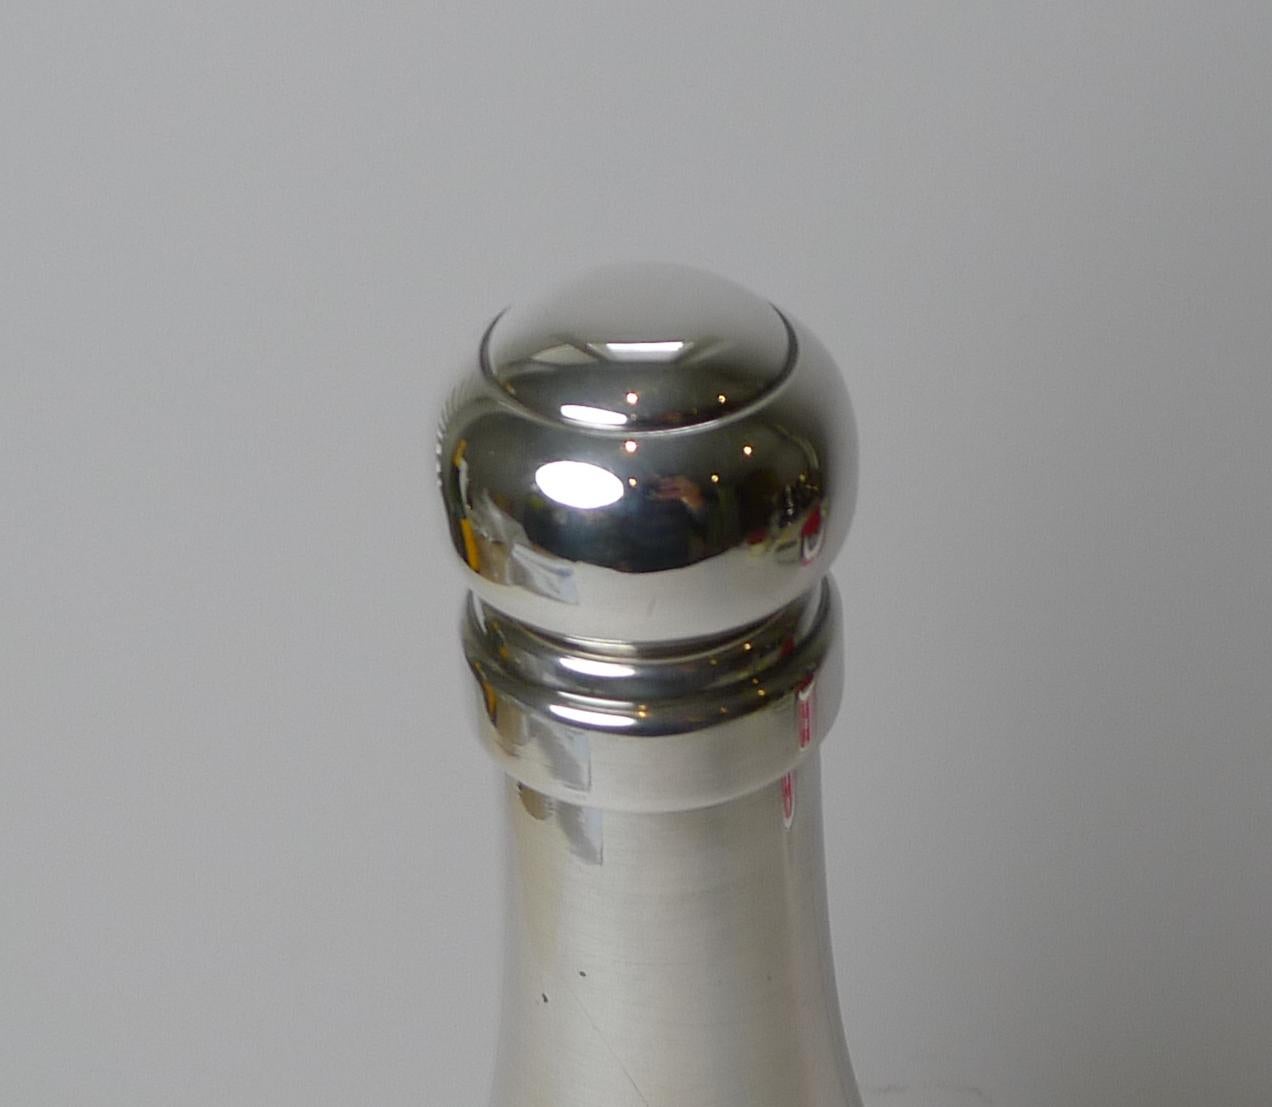 Un rare shaker à cocktail de la recette française, en métal argenté, en forme de bouteille de champagne. Ce qui rend celui-ci si spécial et collector, c'est le support gravé à l'avant sur lequel sont gravées sept recettes de cocktails avec des